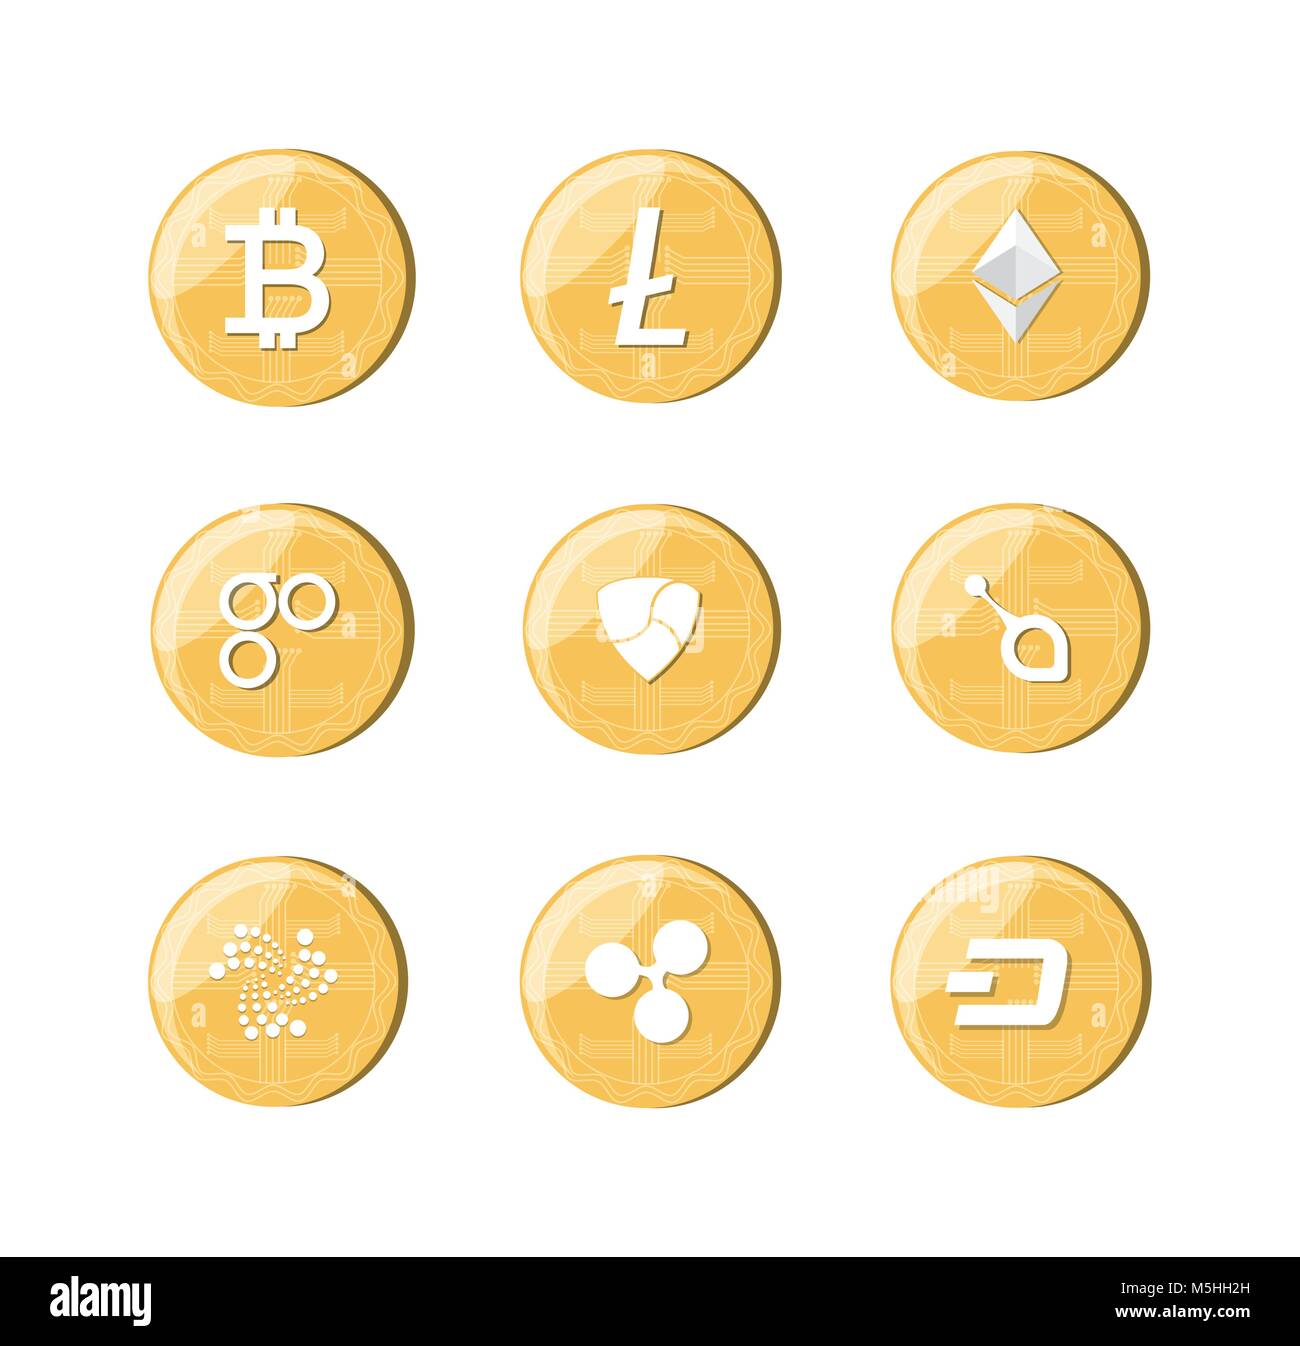 1 usd free bitcoin